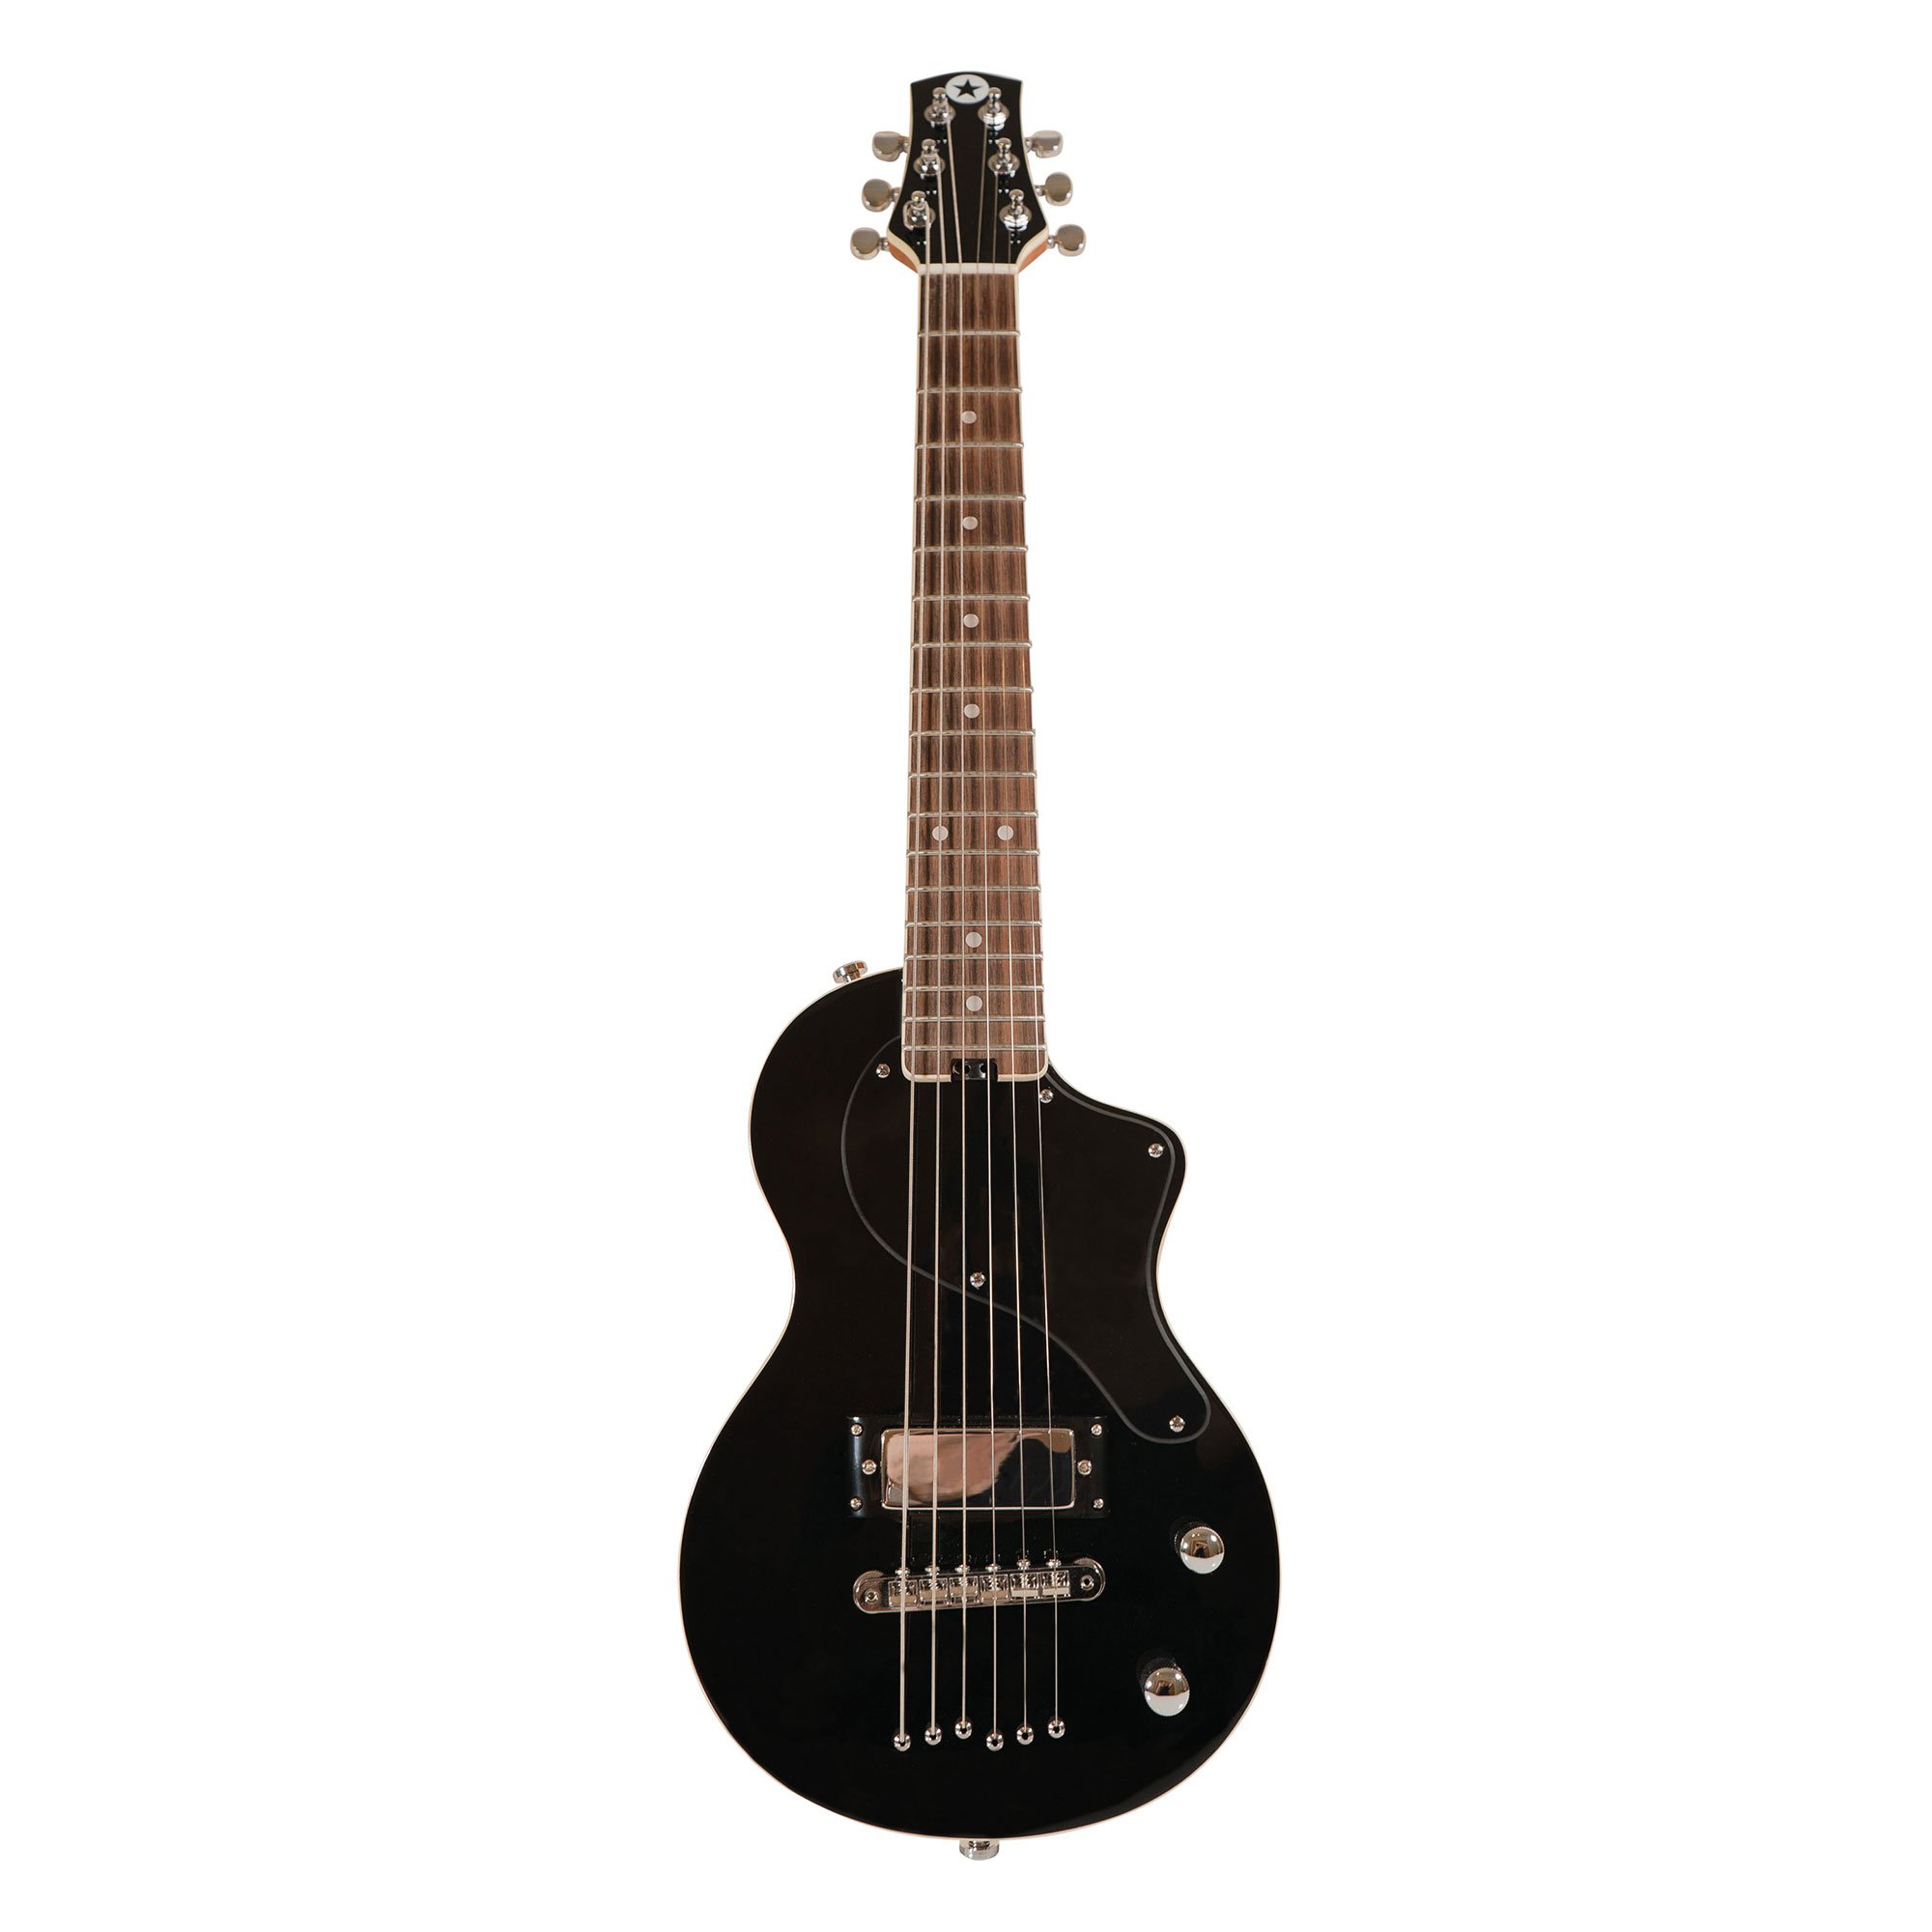 Køb Blackstar Carry-on Travel Guitar - Sort - Pris 2649.00 kr.